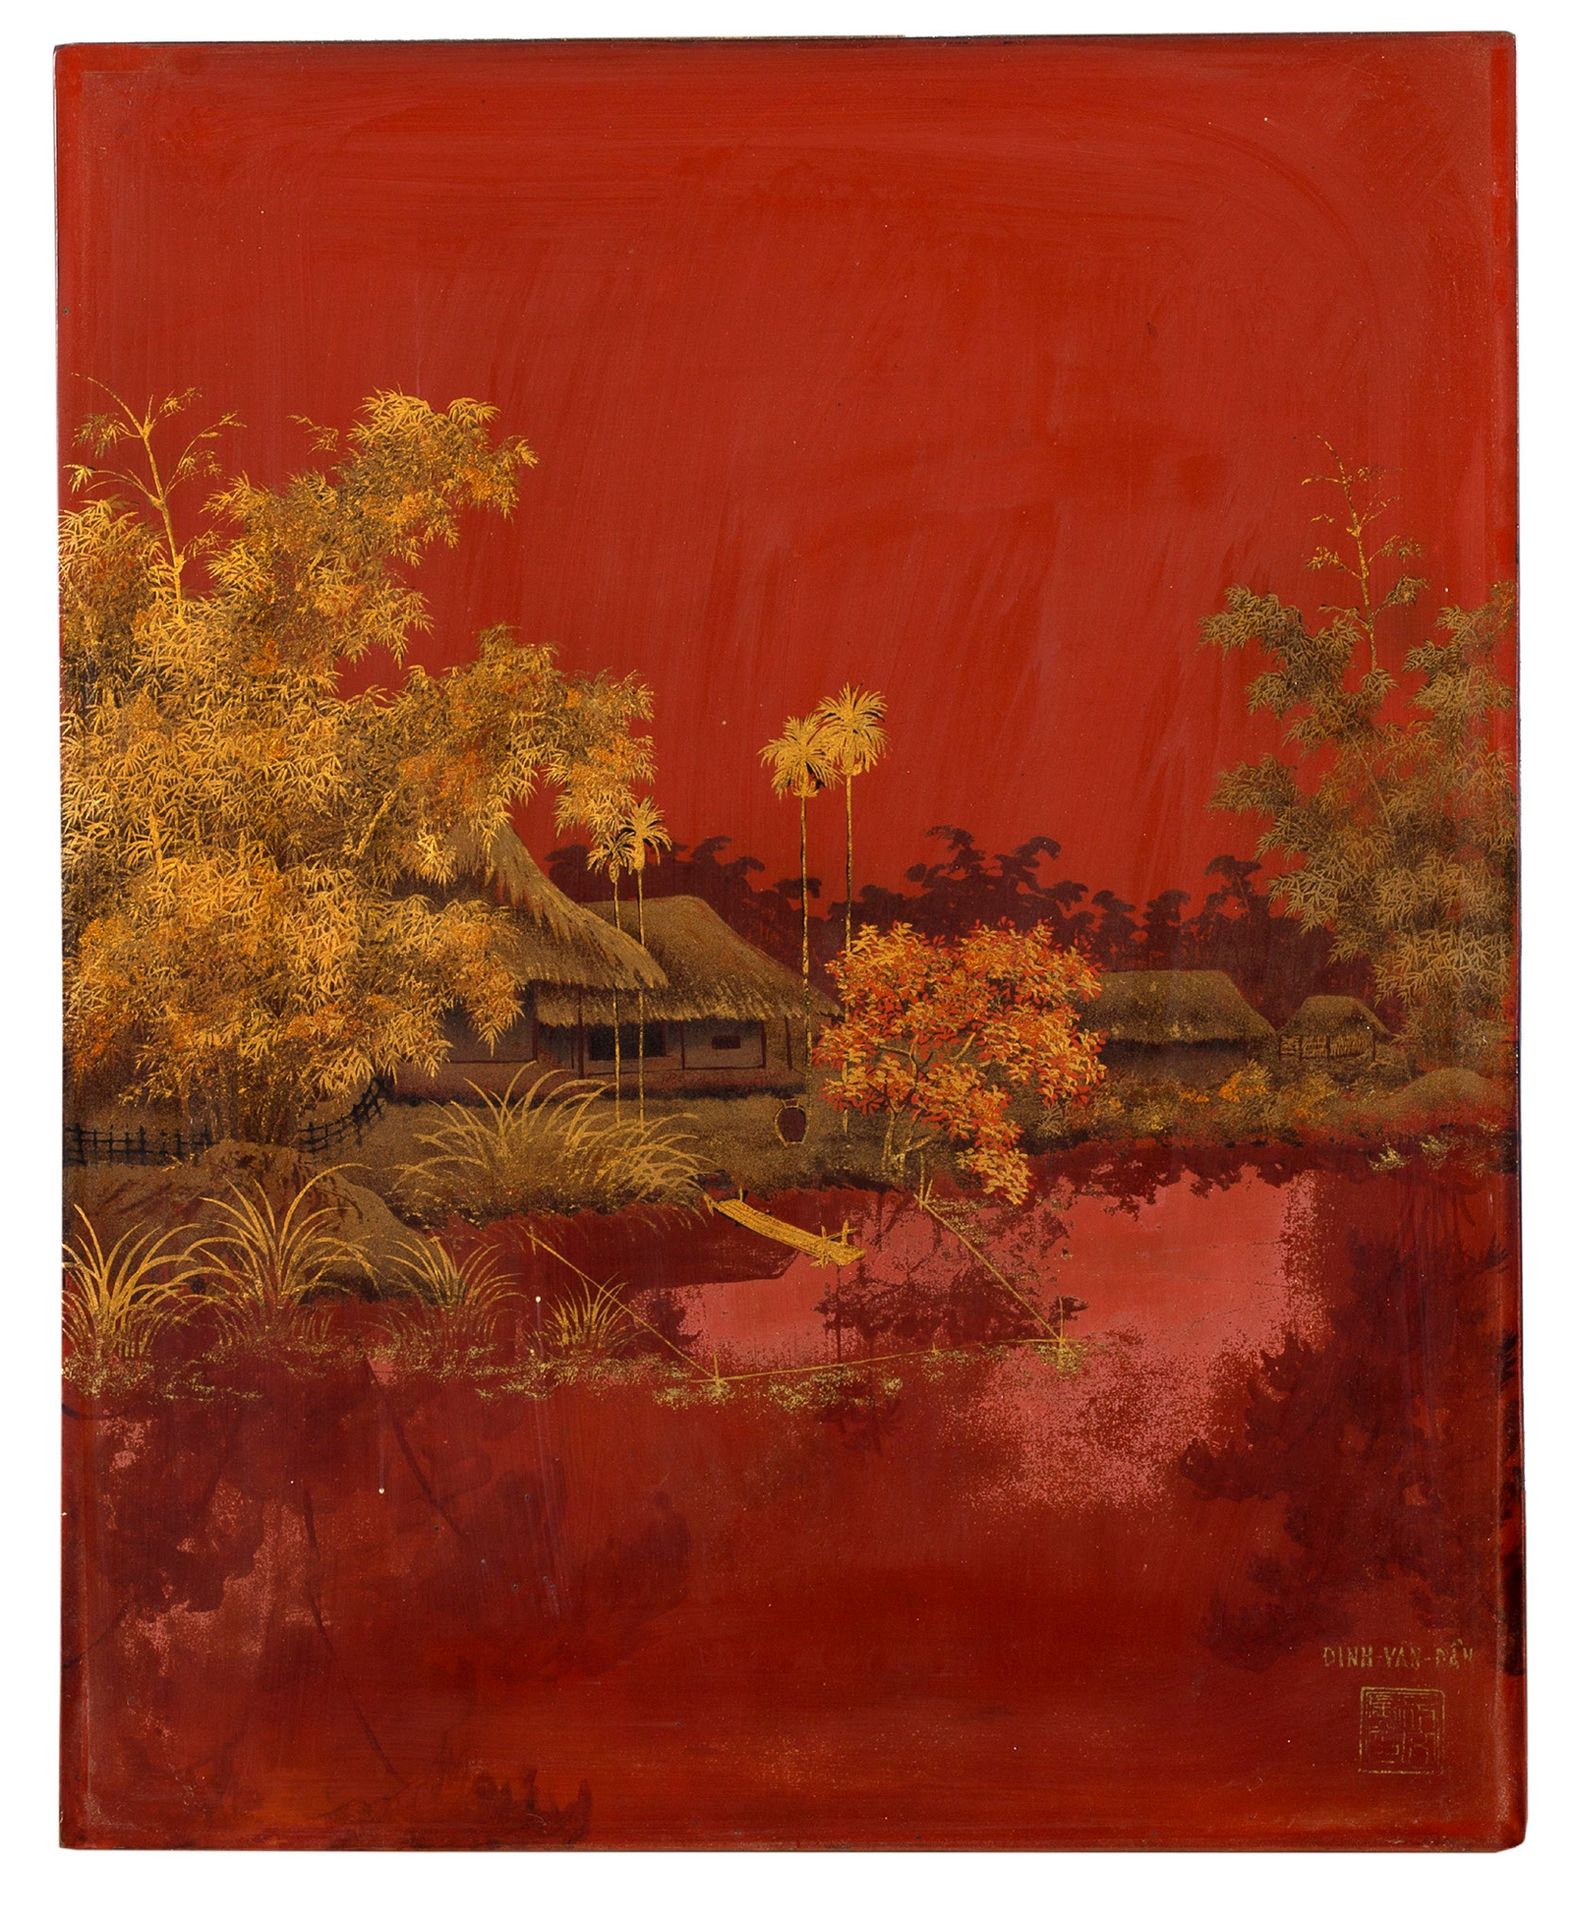 DINH VAN DAN (XX) 
水边的村庄

红底漆器和金色亮点，右下角有签名

35 x 28.5 cm - 13 3/4 x 11 1/4 in.